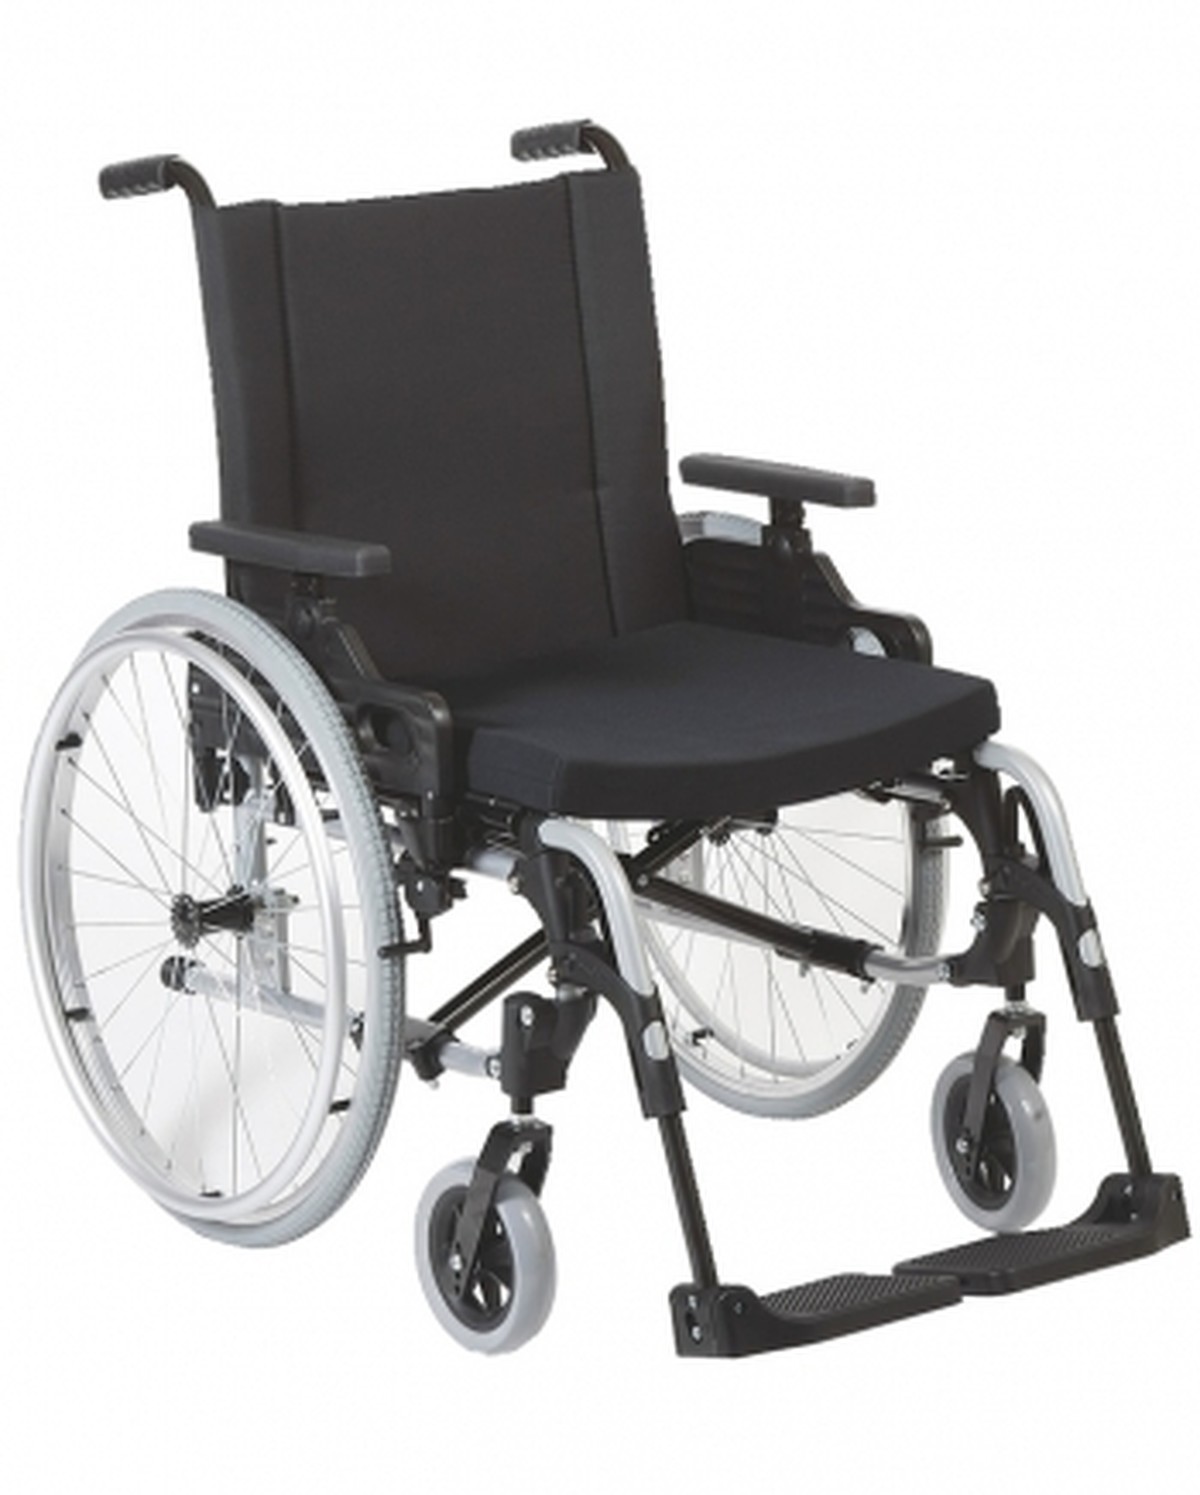 Foto do produto Cadeira de rodas Start M0  até 125kg Ottobock